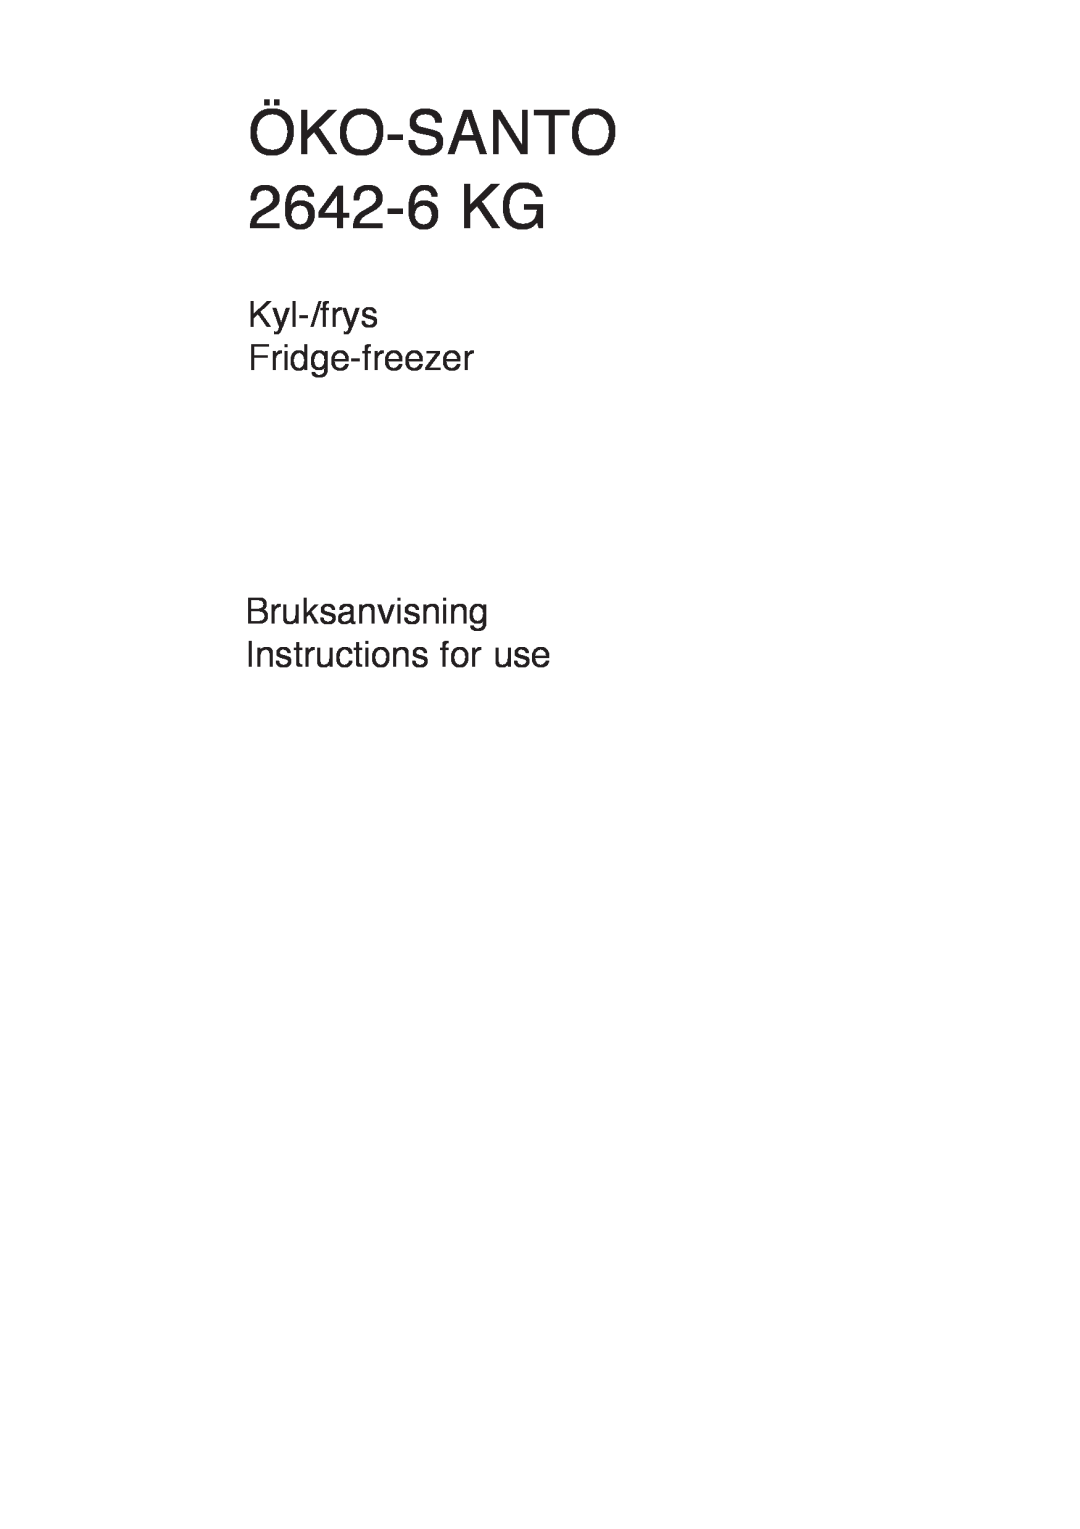 AEG manual …KO-SANTO 2642-6 KG, Kyl-/frys Fridge-freezer Bruksanvisning Instructions for use 